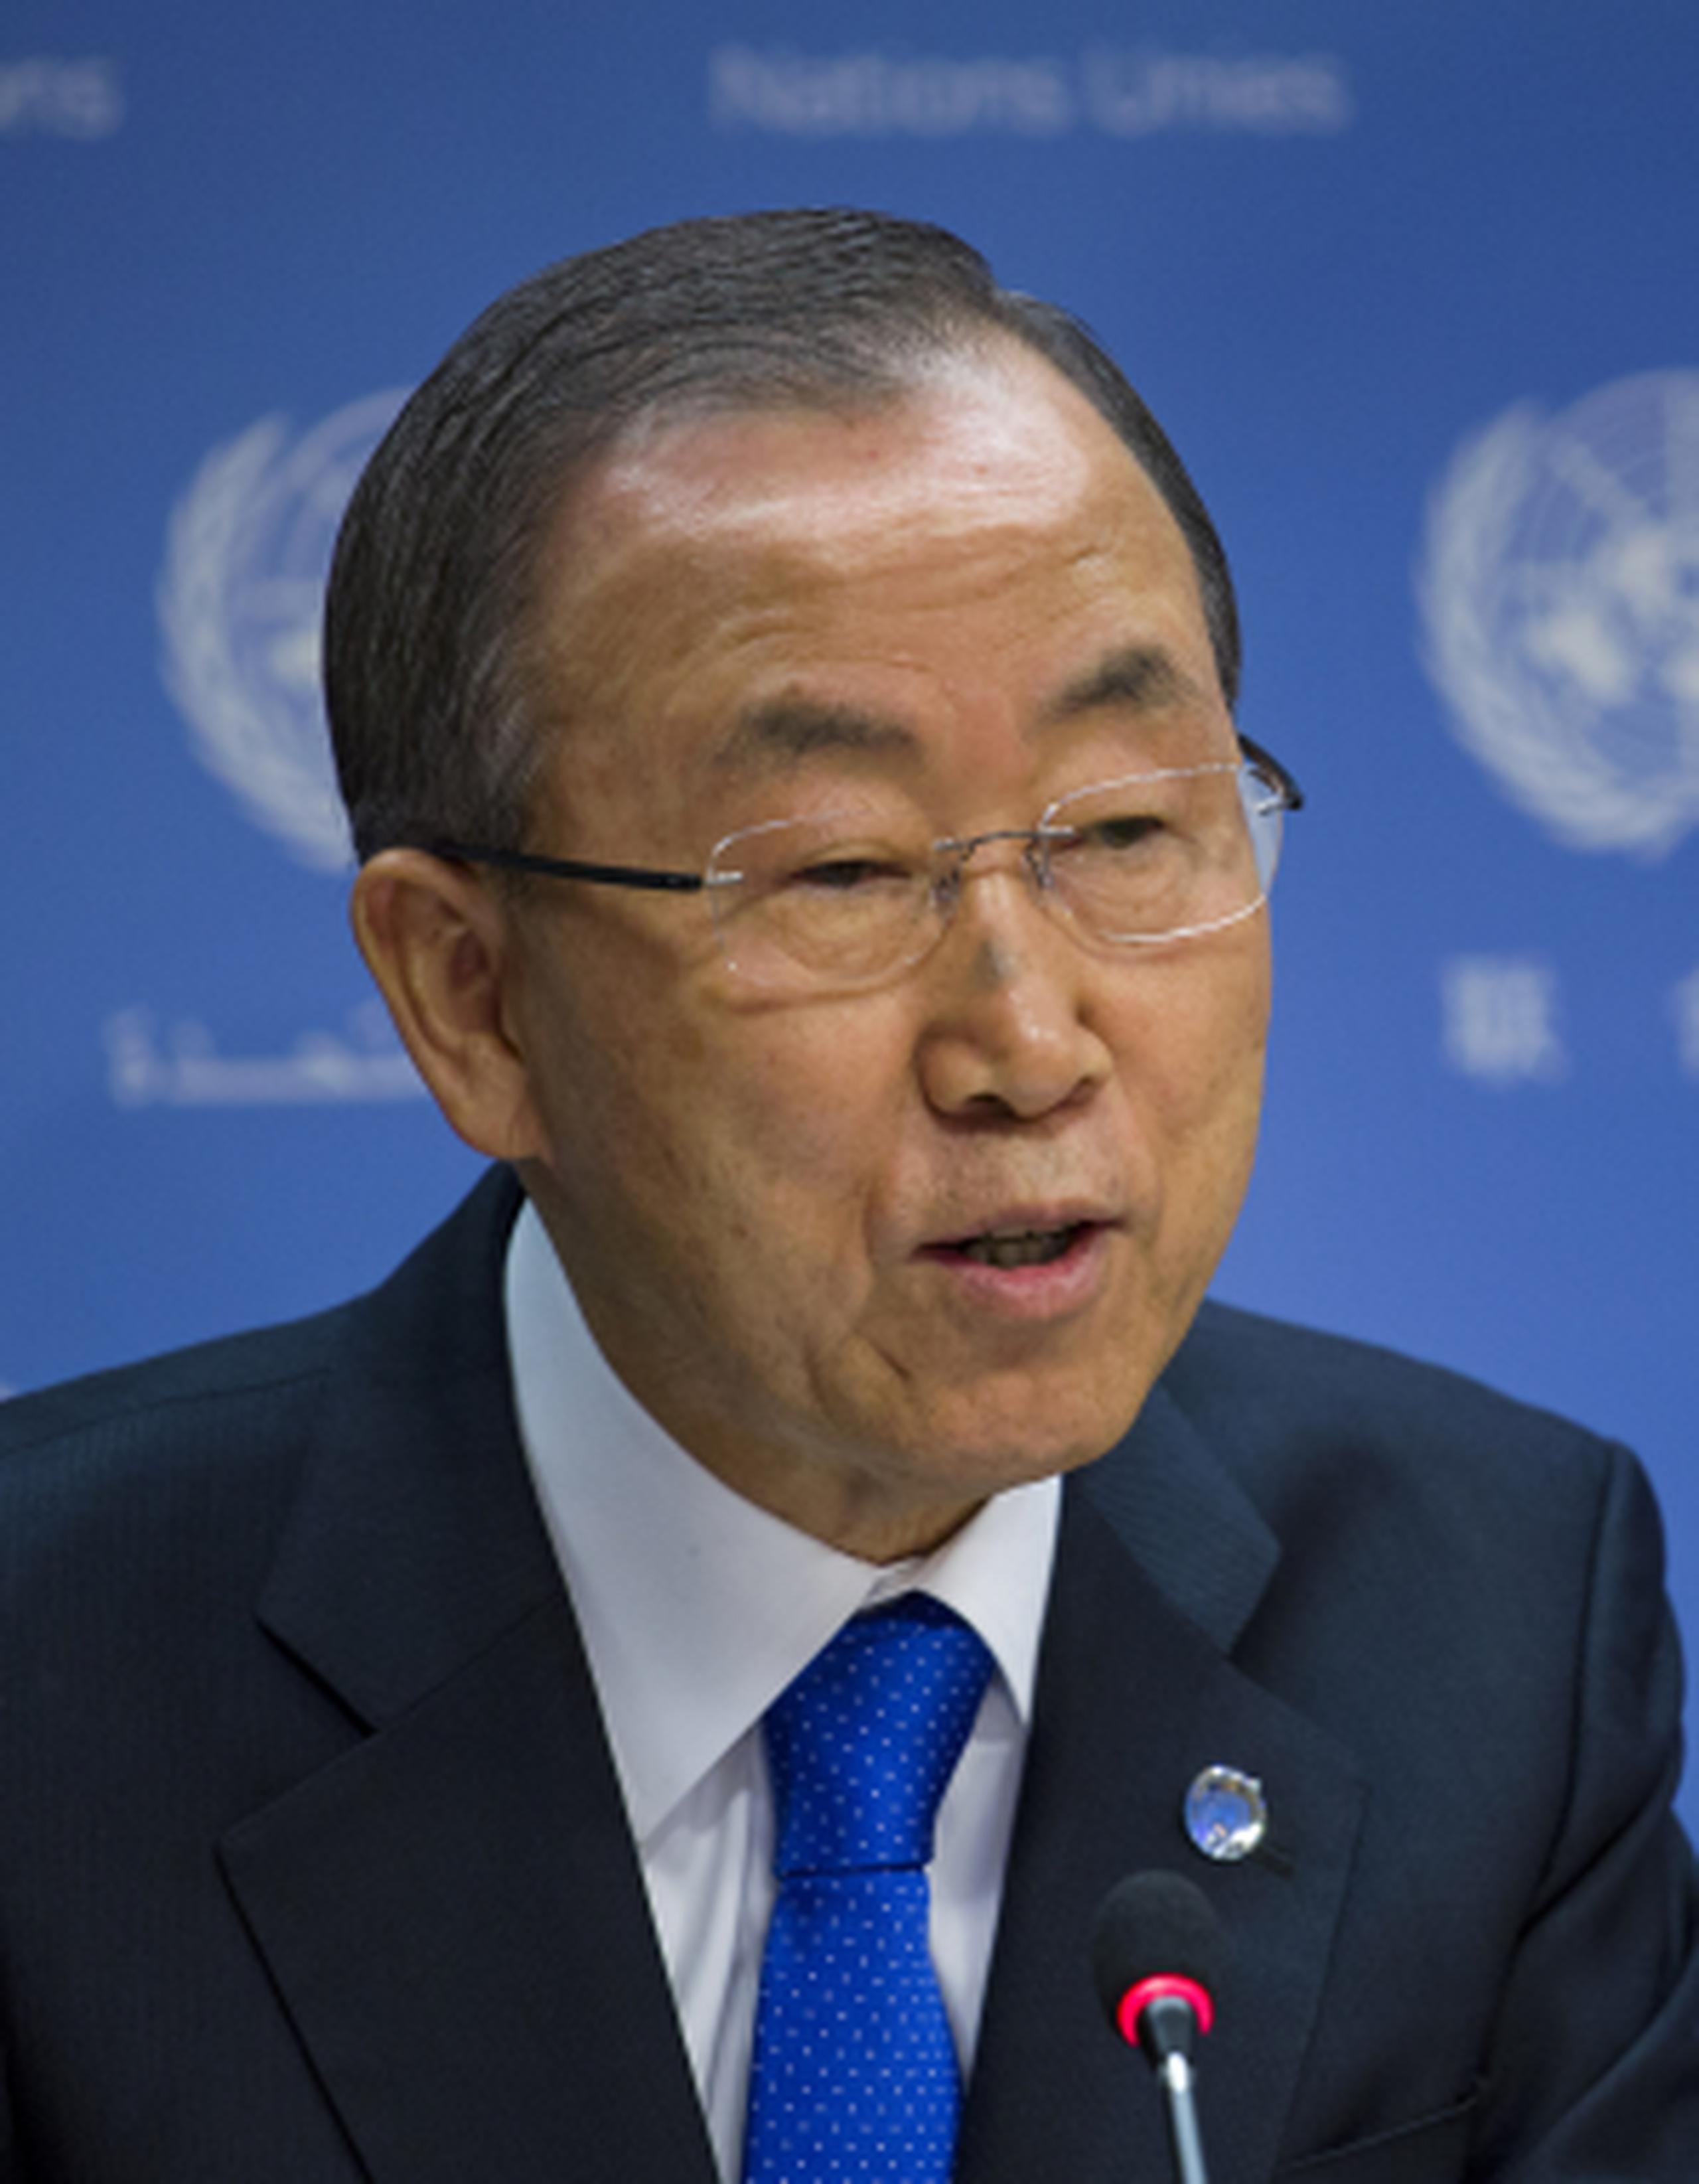 El secretario general Ban Ki-moon podría ir más allá de las conclusiones de los inspectores y describir quién lo hizo, dijo uno de los diplomáticos. (AP Photo/Craig Ruttle)